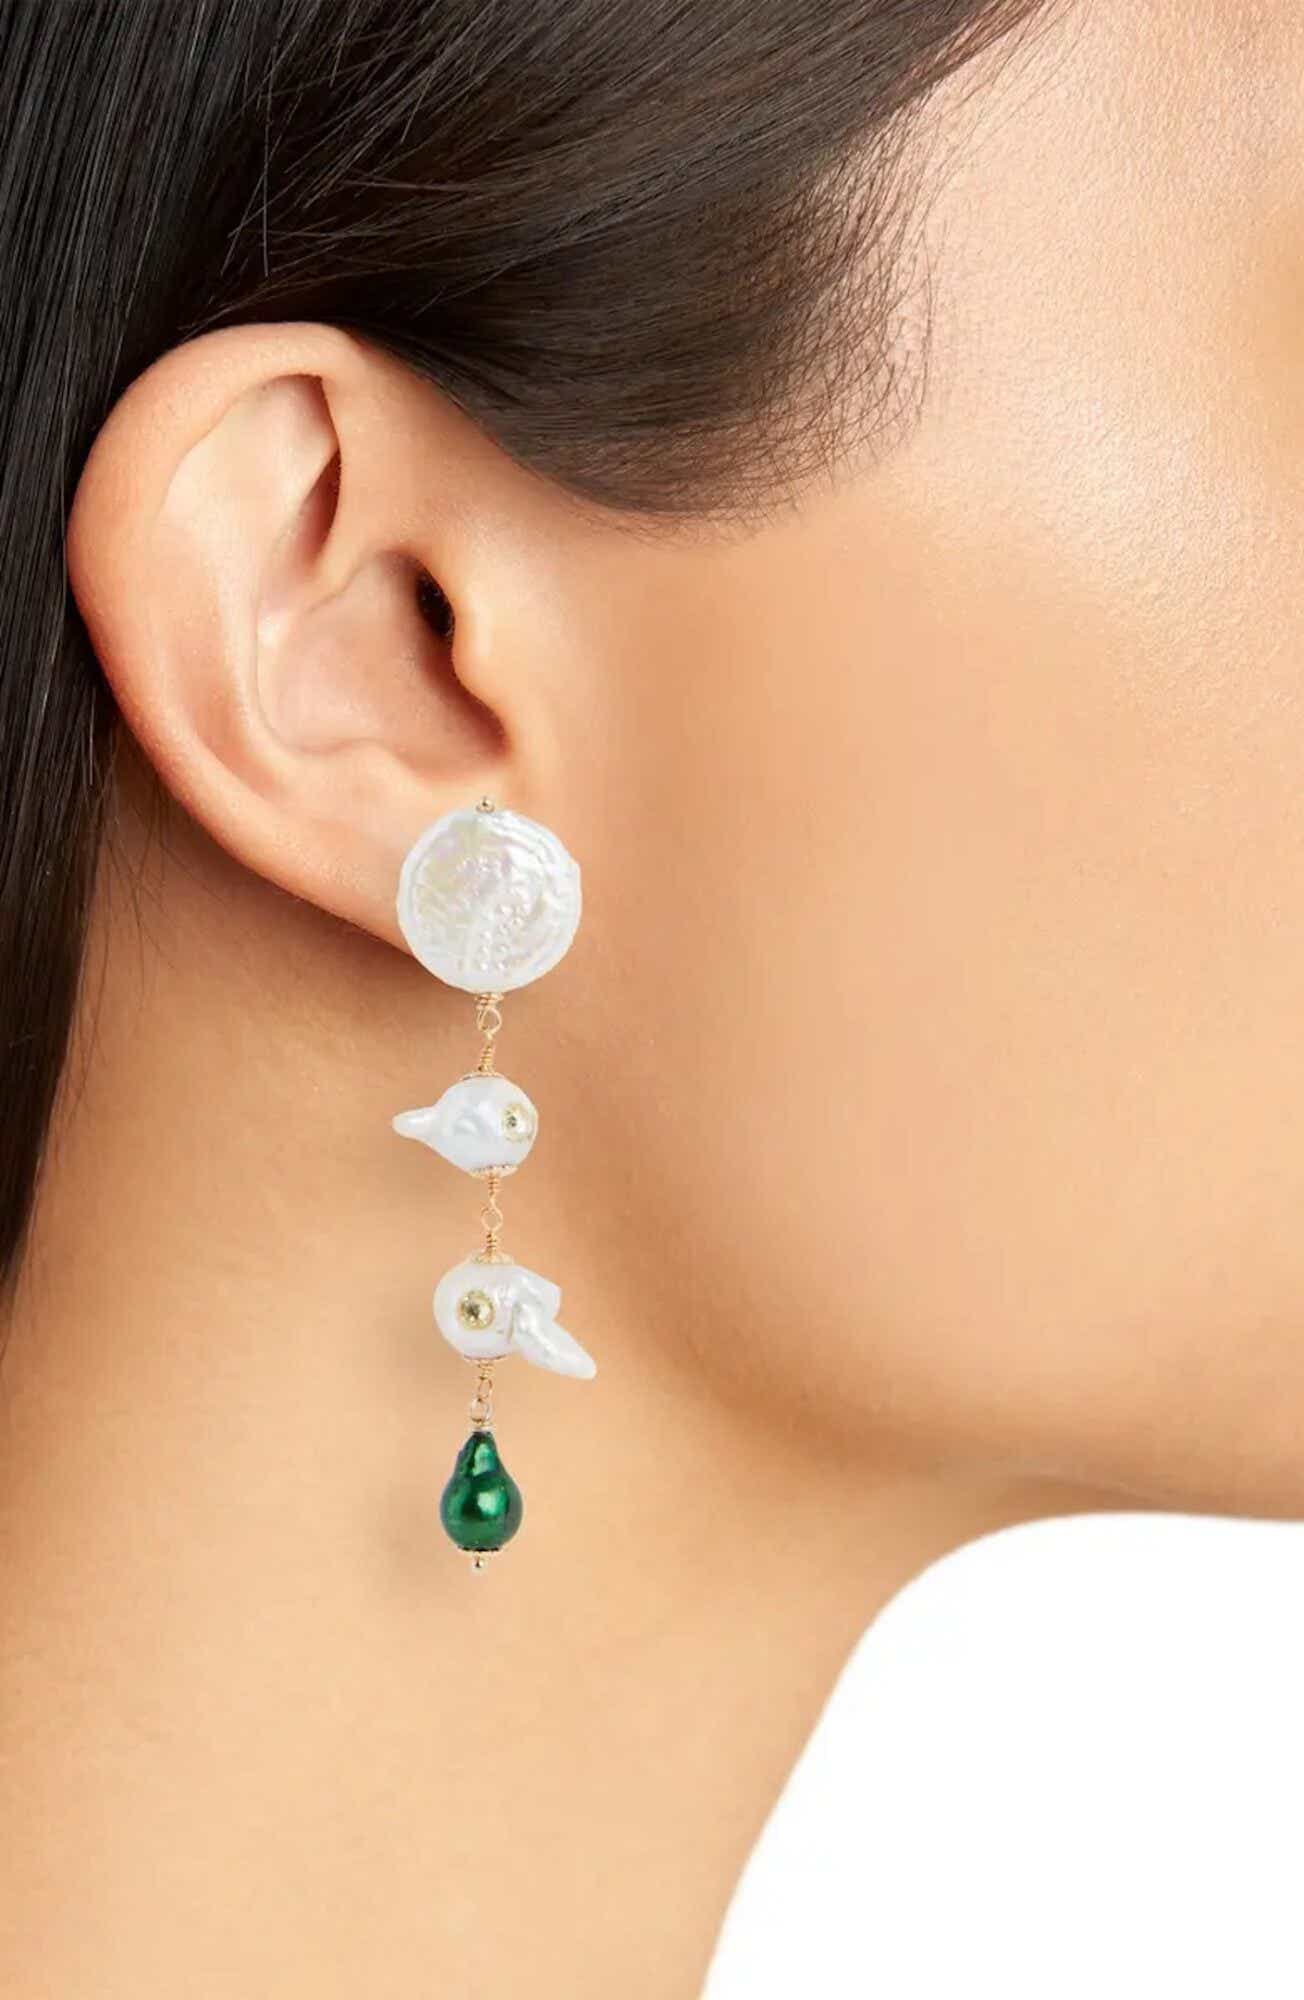 An earring hangs off an earlobe.